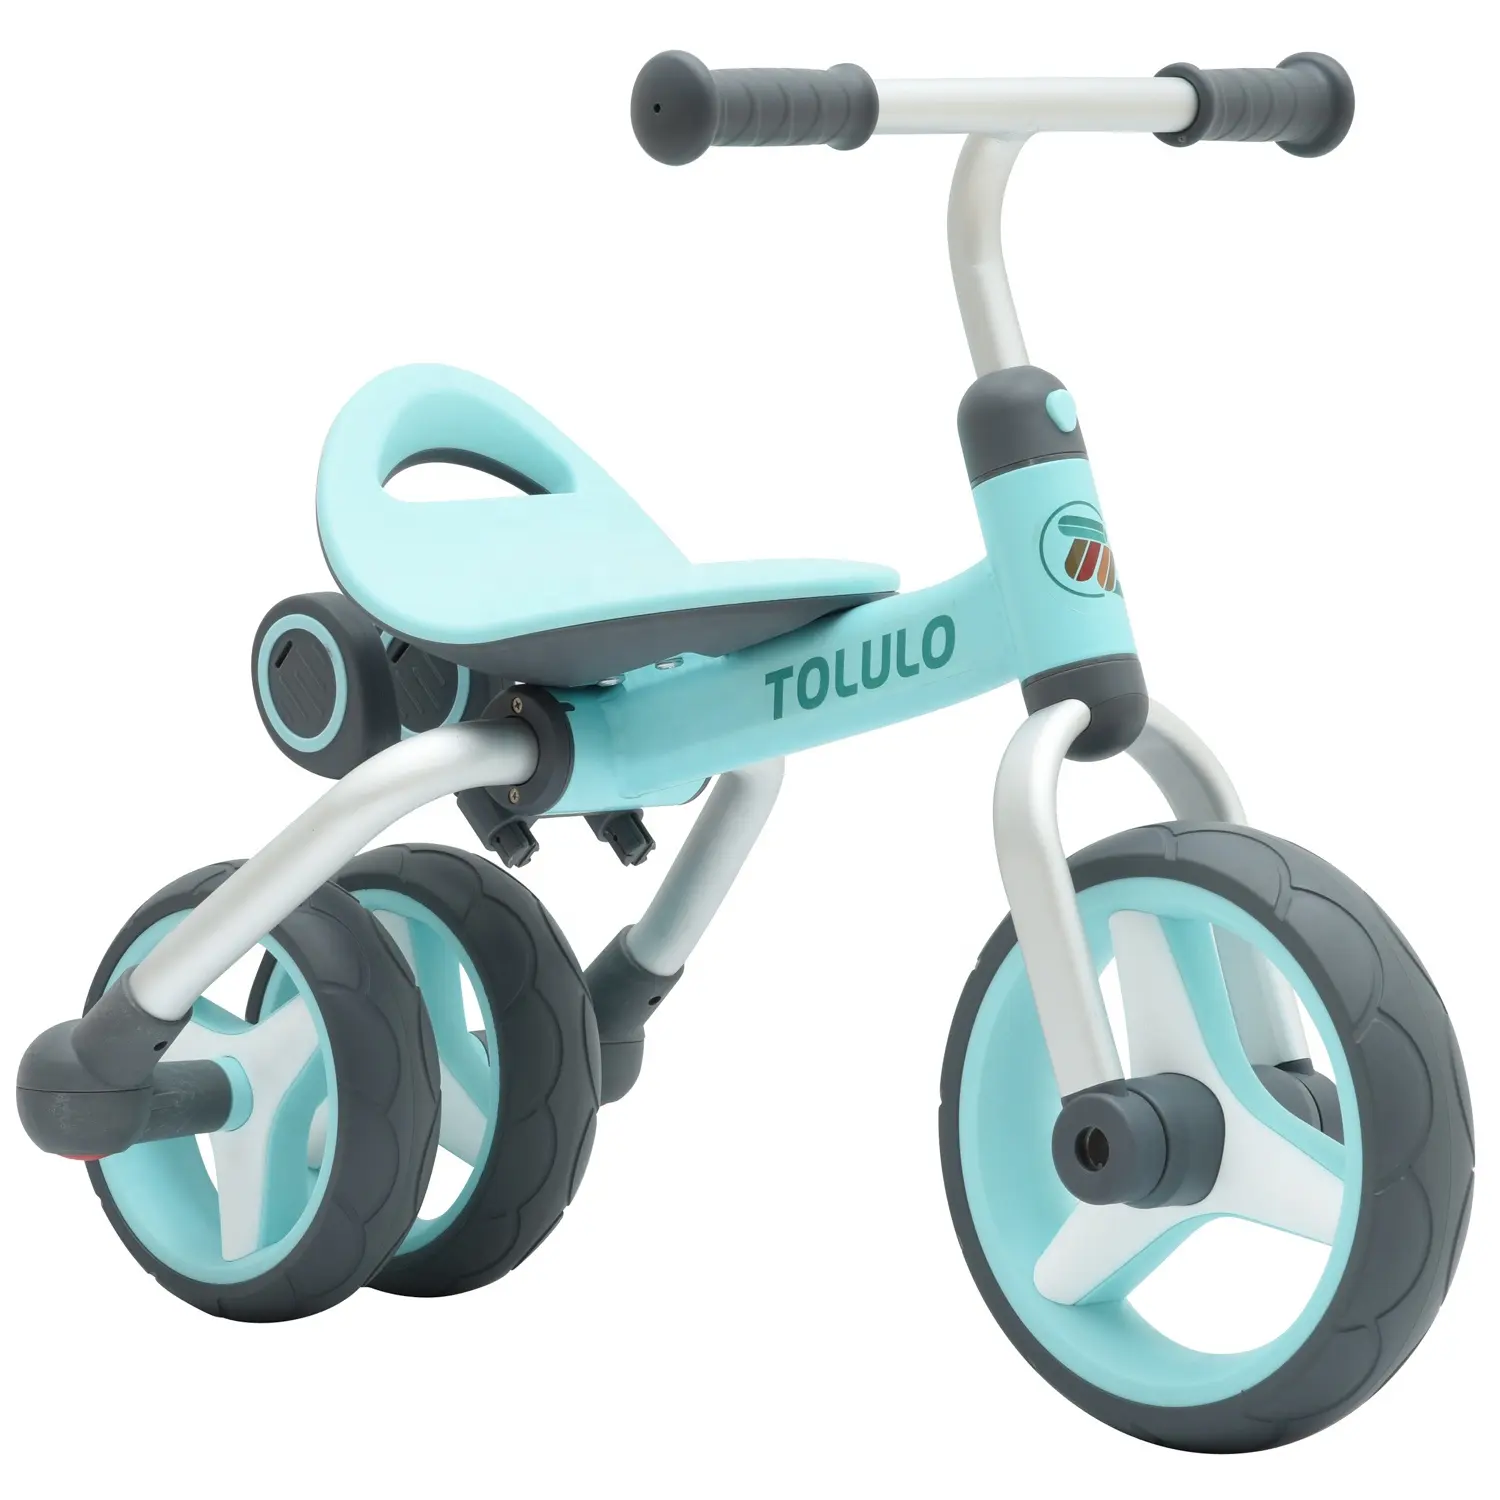 折りたたみ式ベビーウォーカープッシュキッズバランスバイク3in1Tricycle Child 3 Wheel Ride on Toys for Toddler2-6 Year Boys Girls